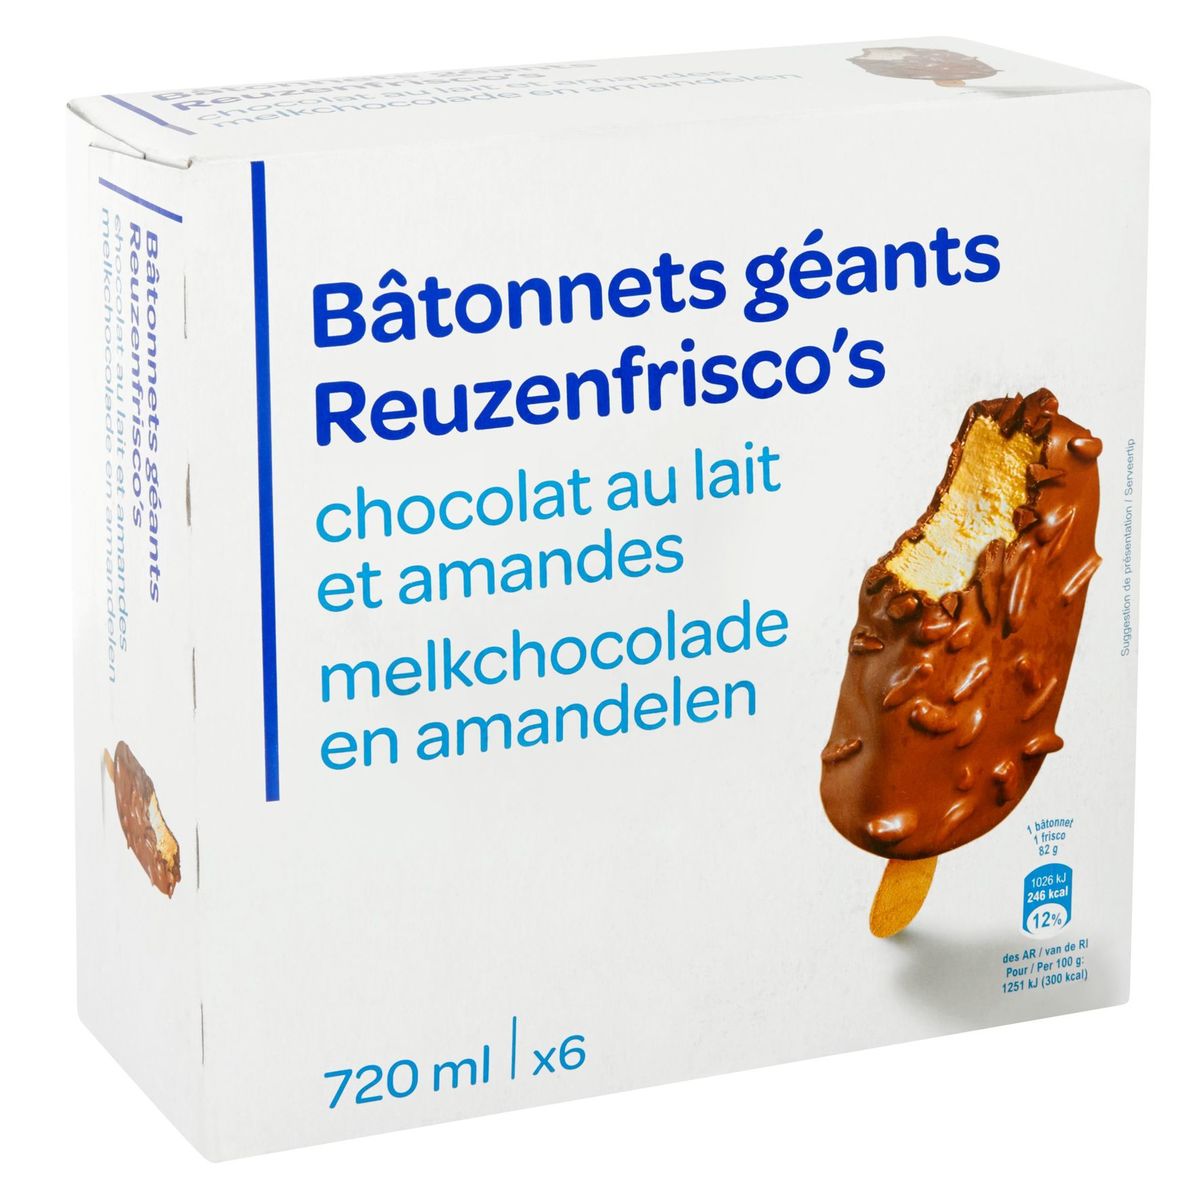 Reuzenfrisco's Melkchocolade en Amandelen 6 x 82 g